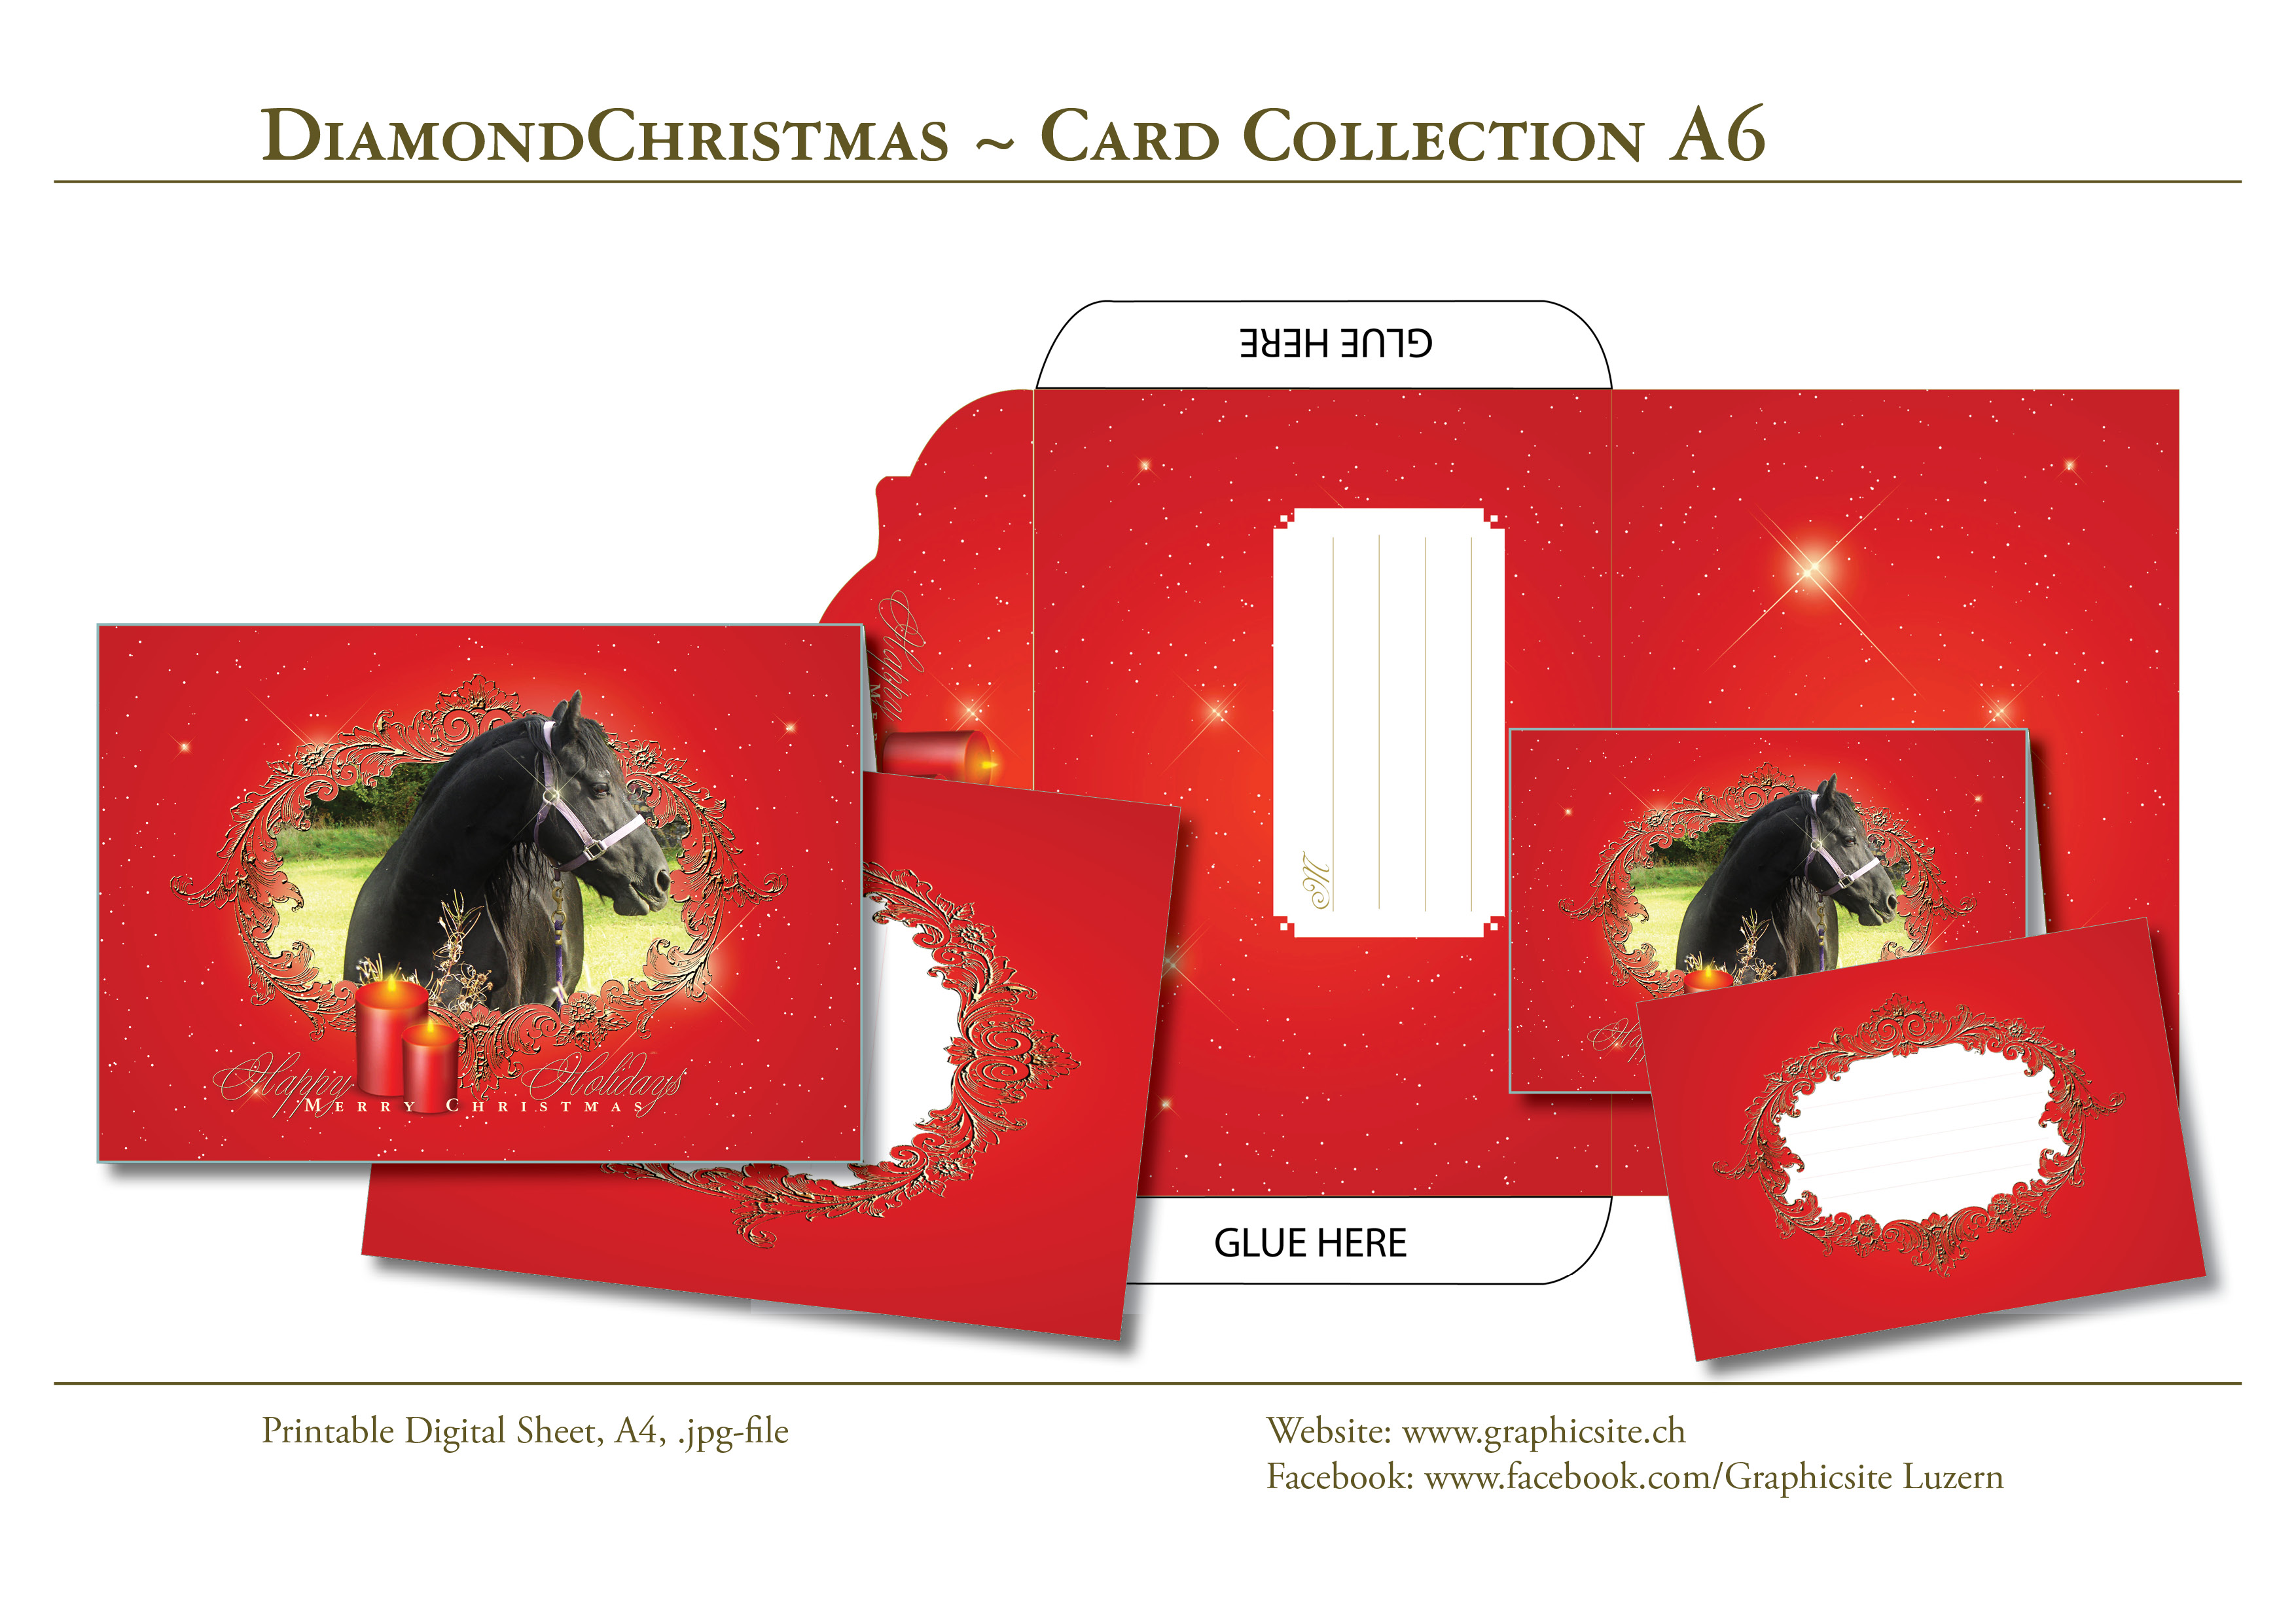 Karten selber drucken - Weihnachtskarten, Grusskarten, Tiere -  Kuvert - #pferd, #weihnachtskarten, #karten, #selber, #drucken, #gestalten, #grusskarten, #basteln, #luzern, #schweiz